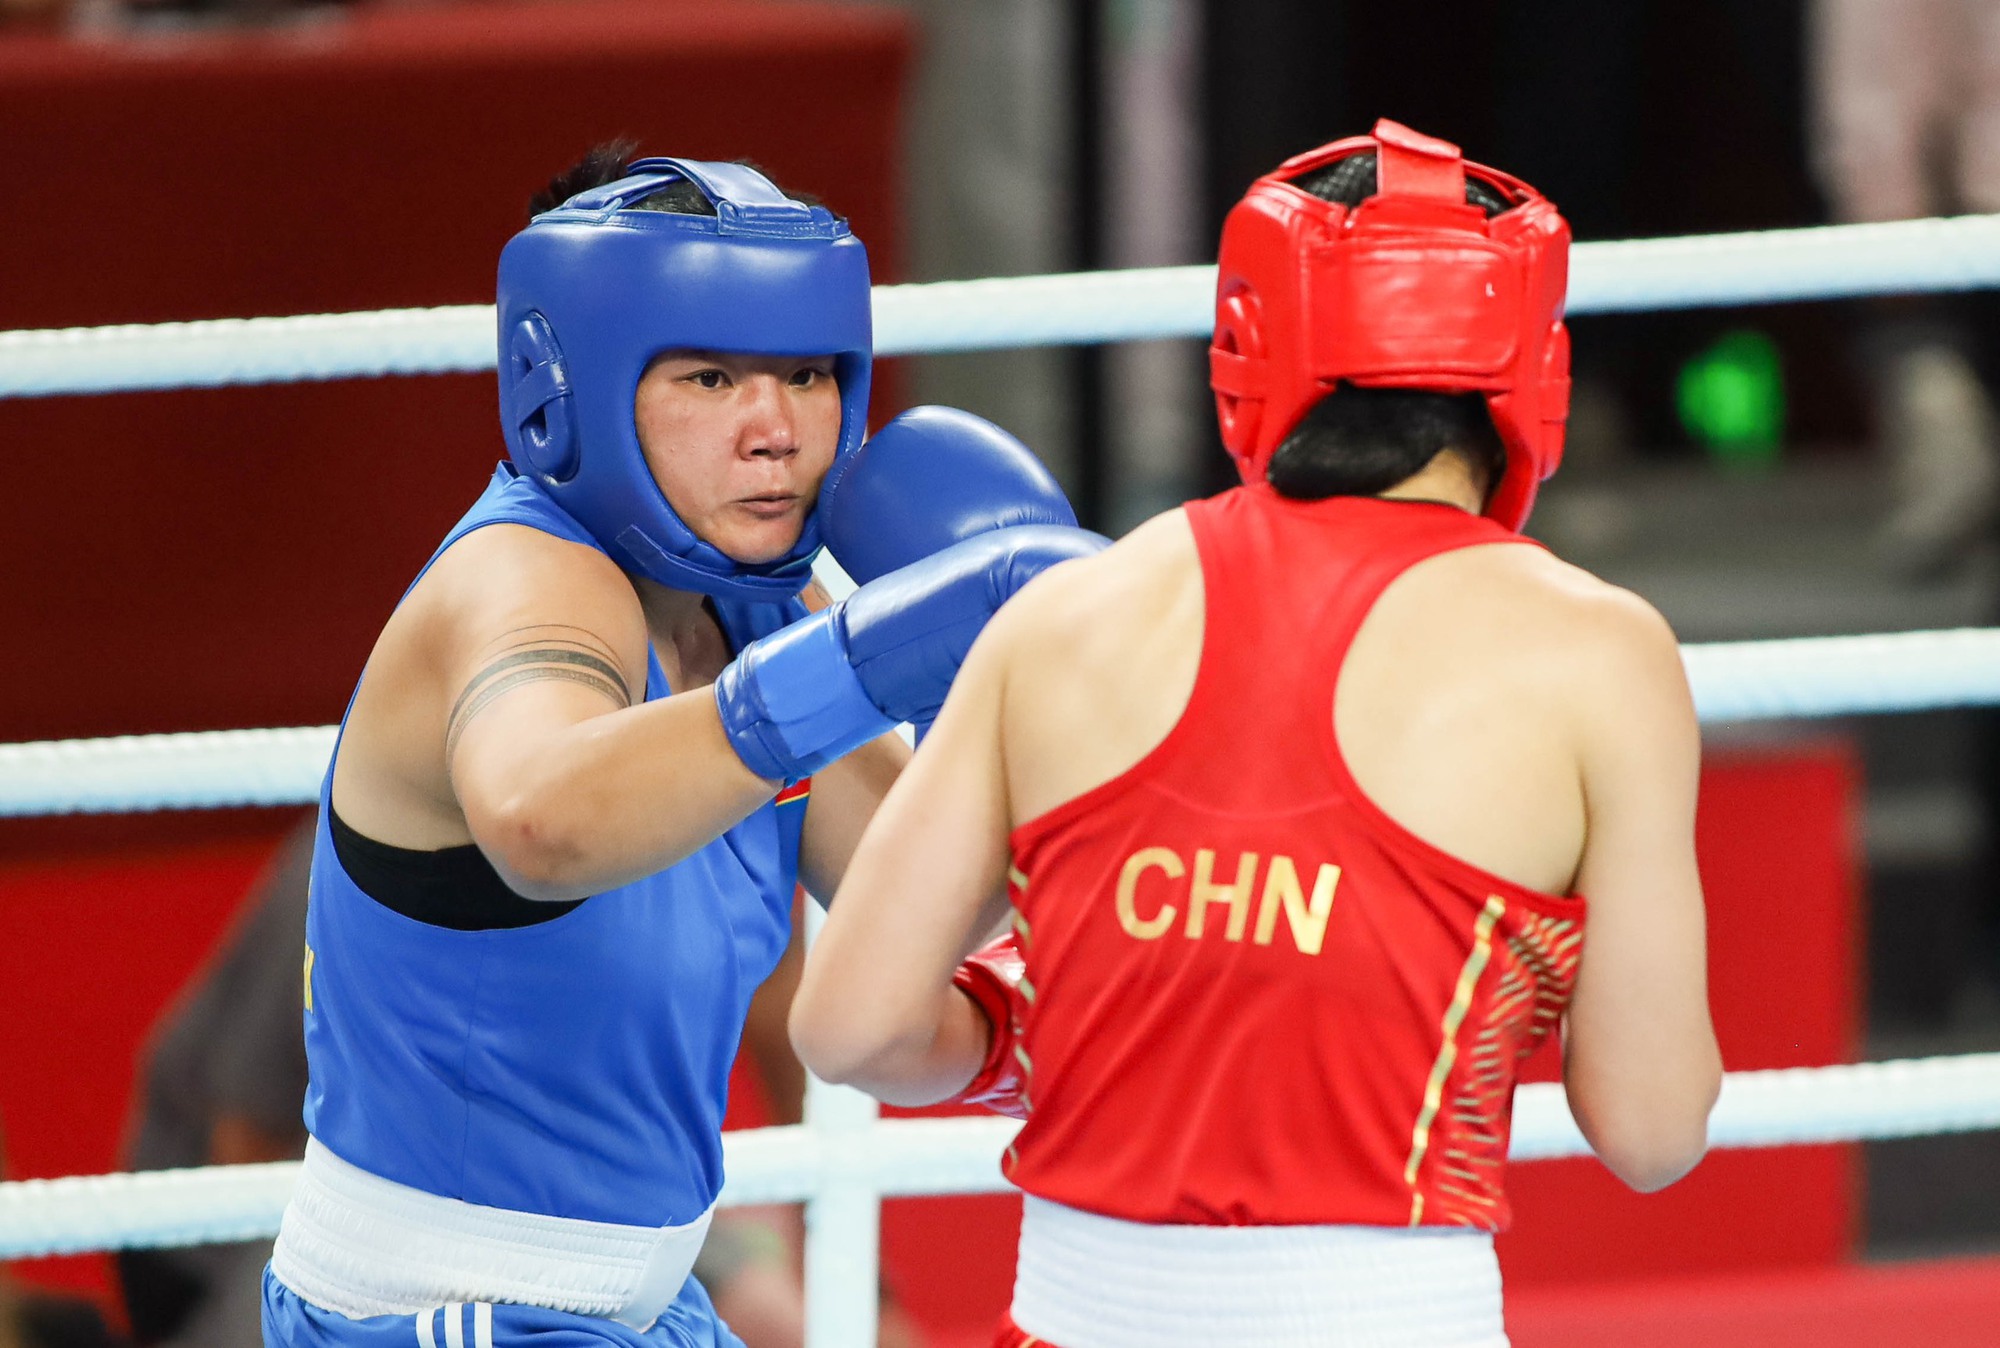 Boxing nữ tiếp tục giành thêm thành tích cho Đoàn Thể thao Việt Nam tại ASIAD 19 - Ảnh 1.